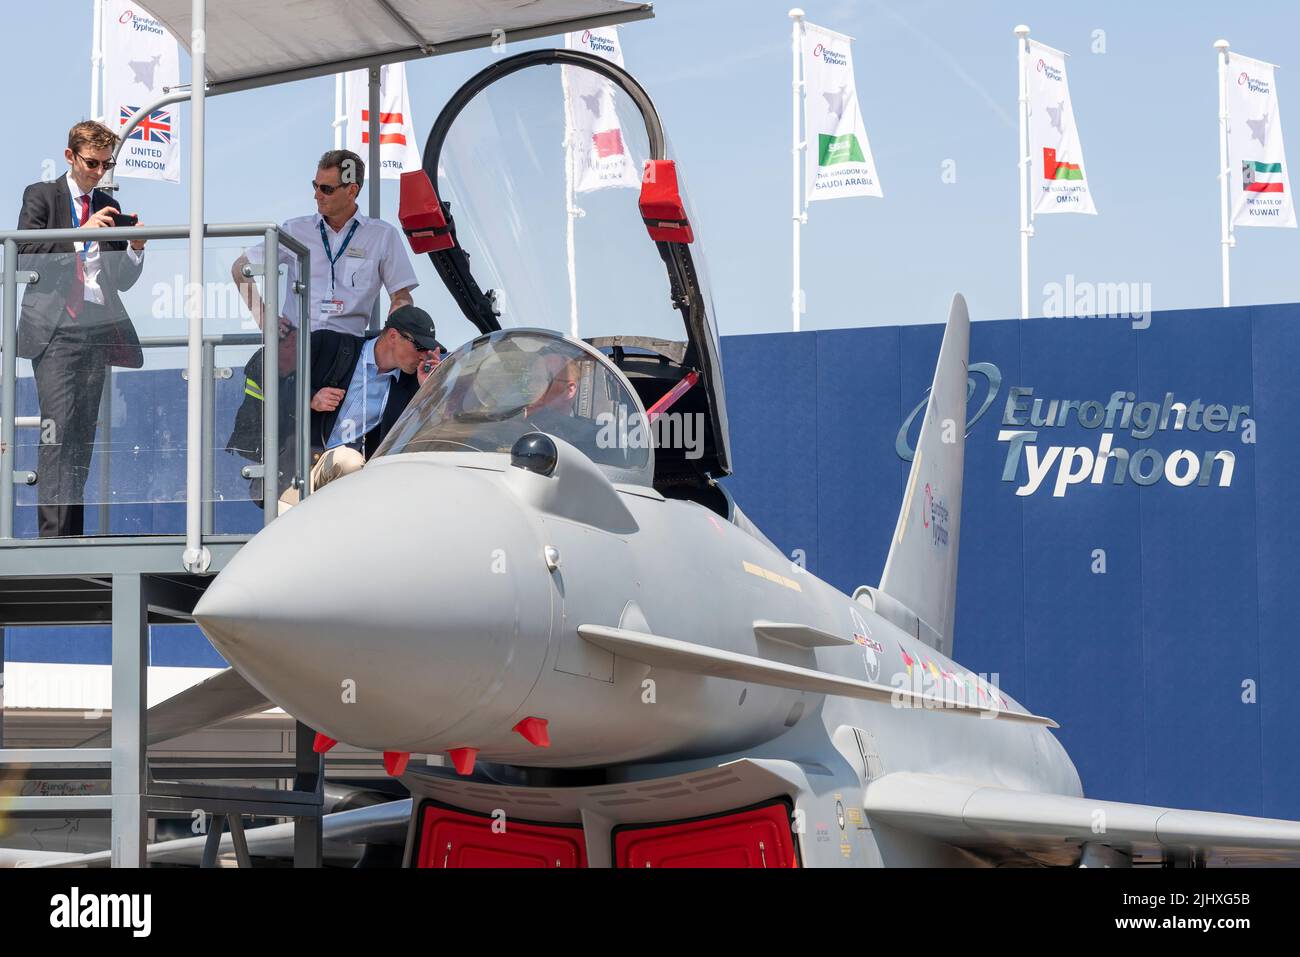 Stand de promoción de ventas de aviones de combate Eurofighter Typhoon en Farnborough International Airshow 2022. Foto de stock